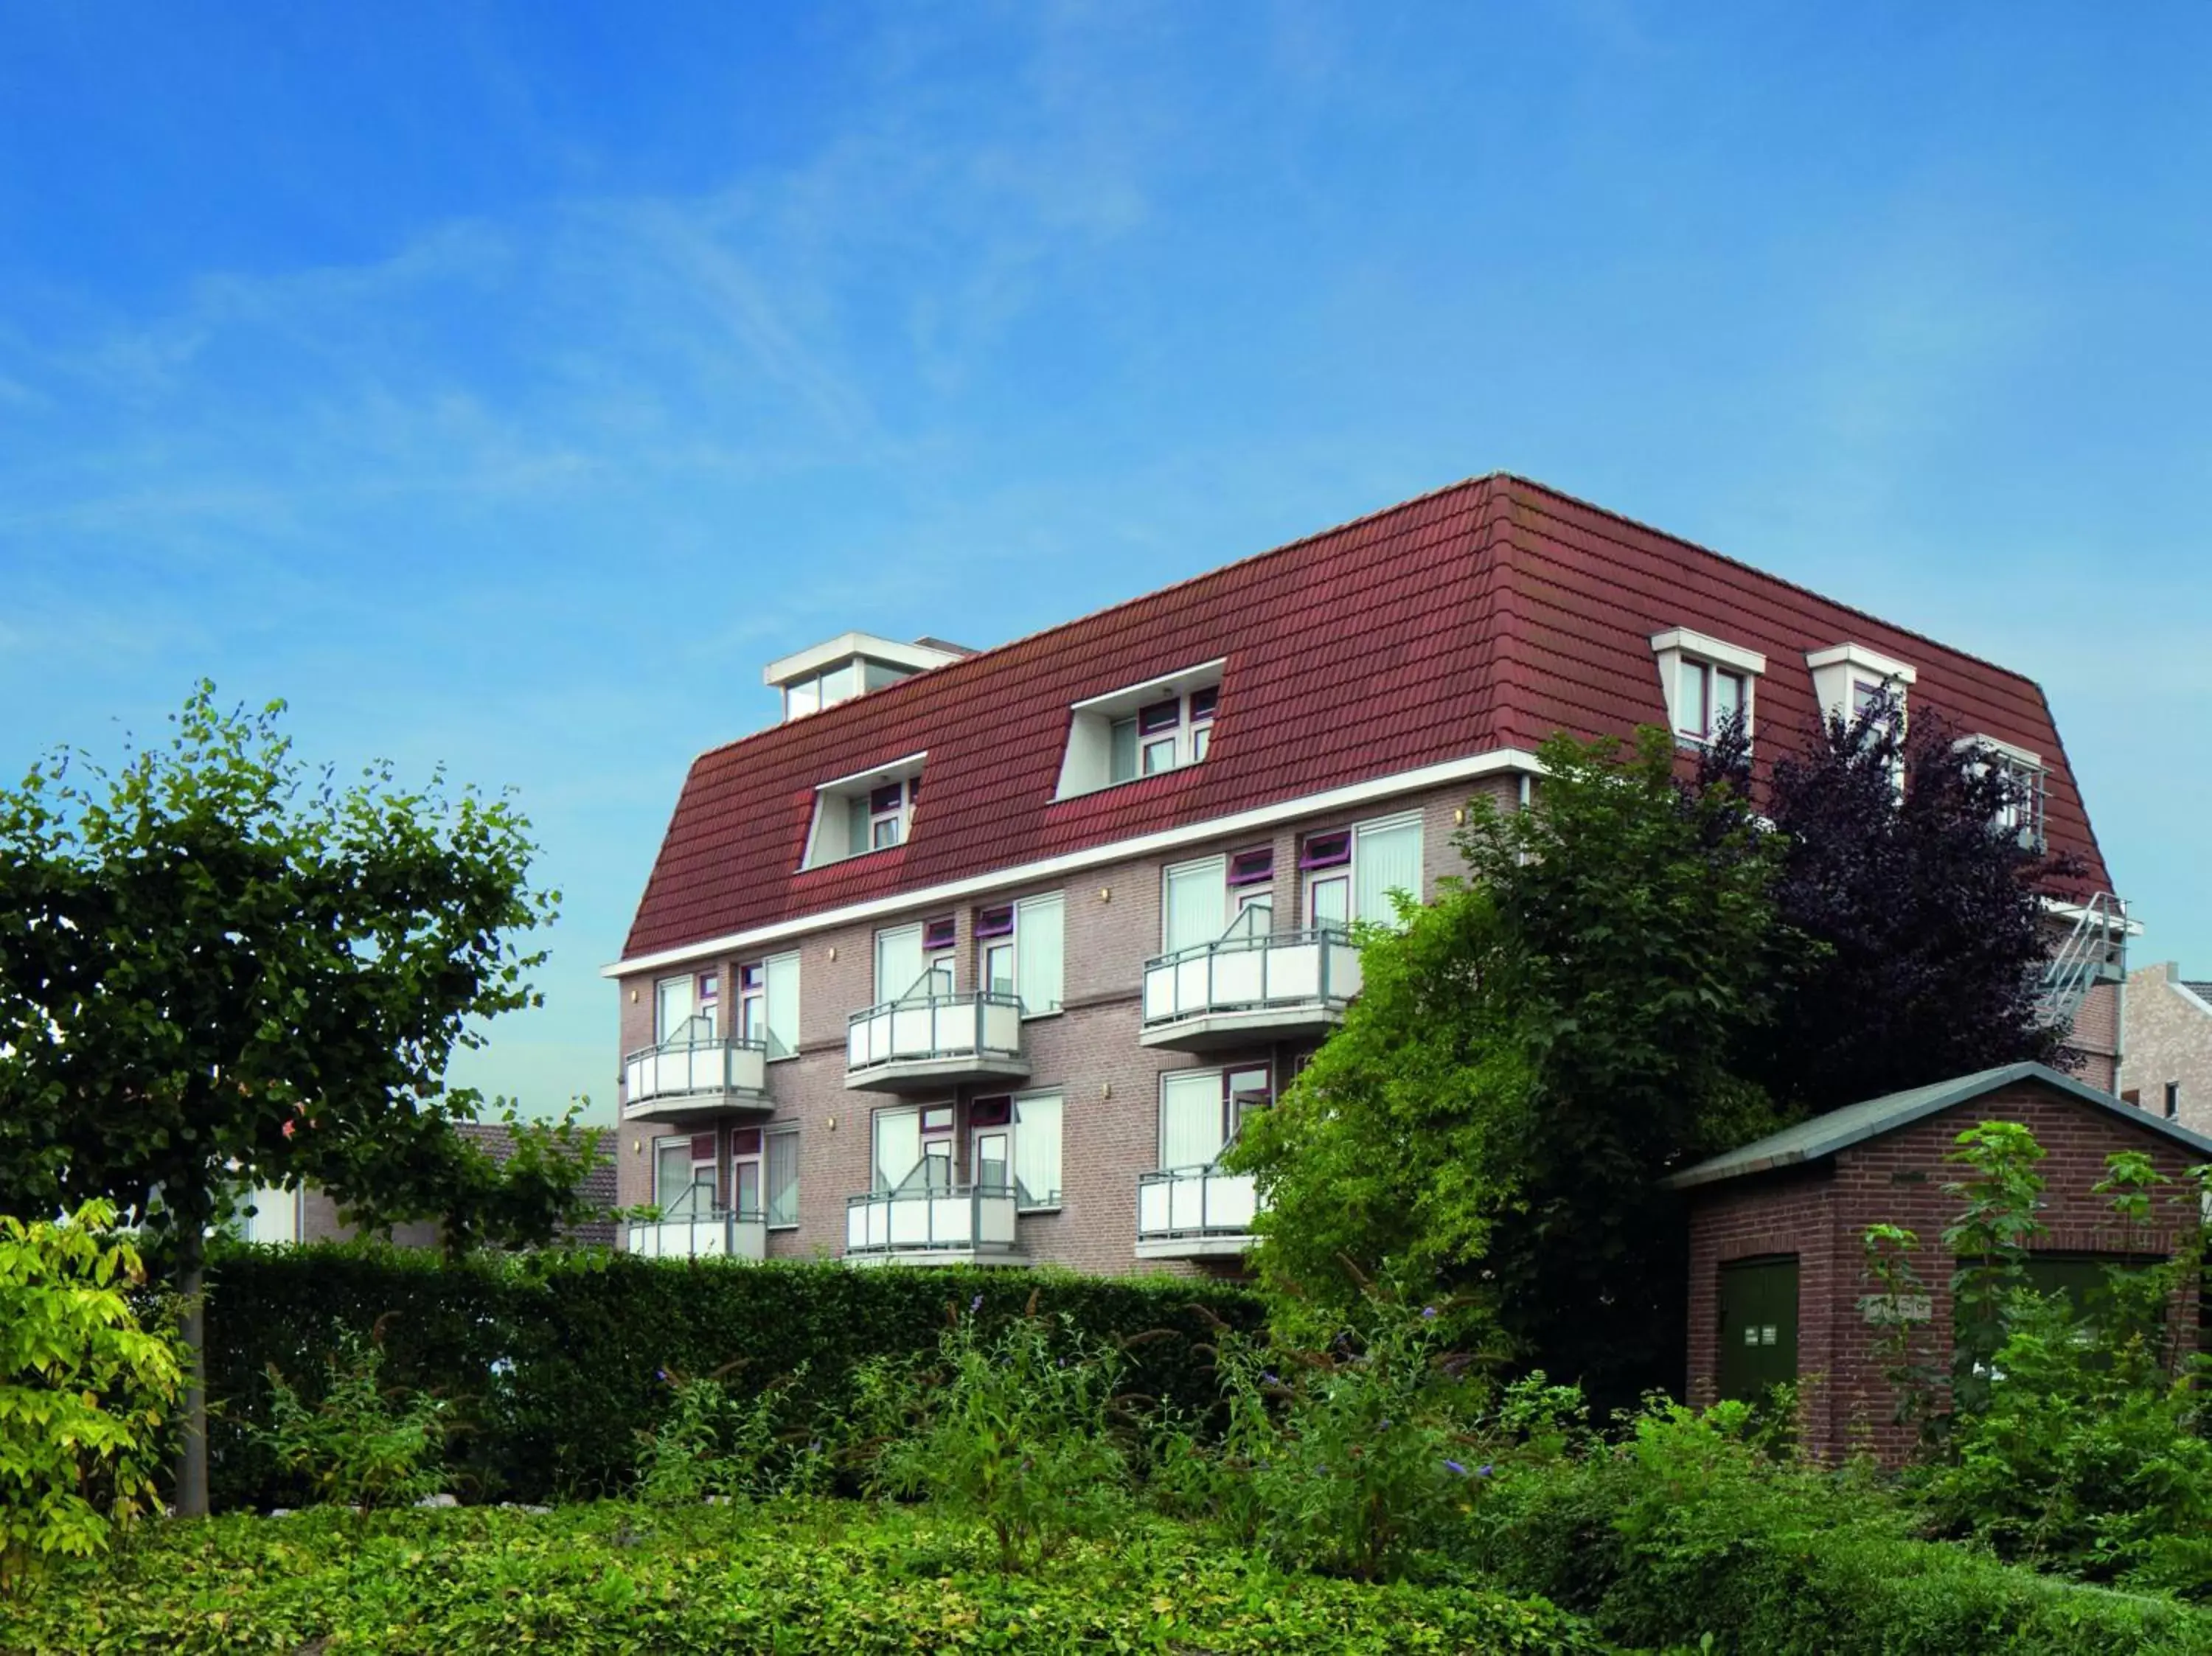 Area and facilities, Property Building in Fletcher Hotel Restaurant De Gelderse Poort